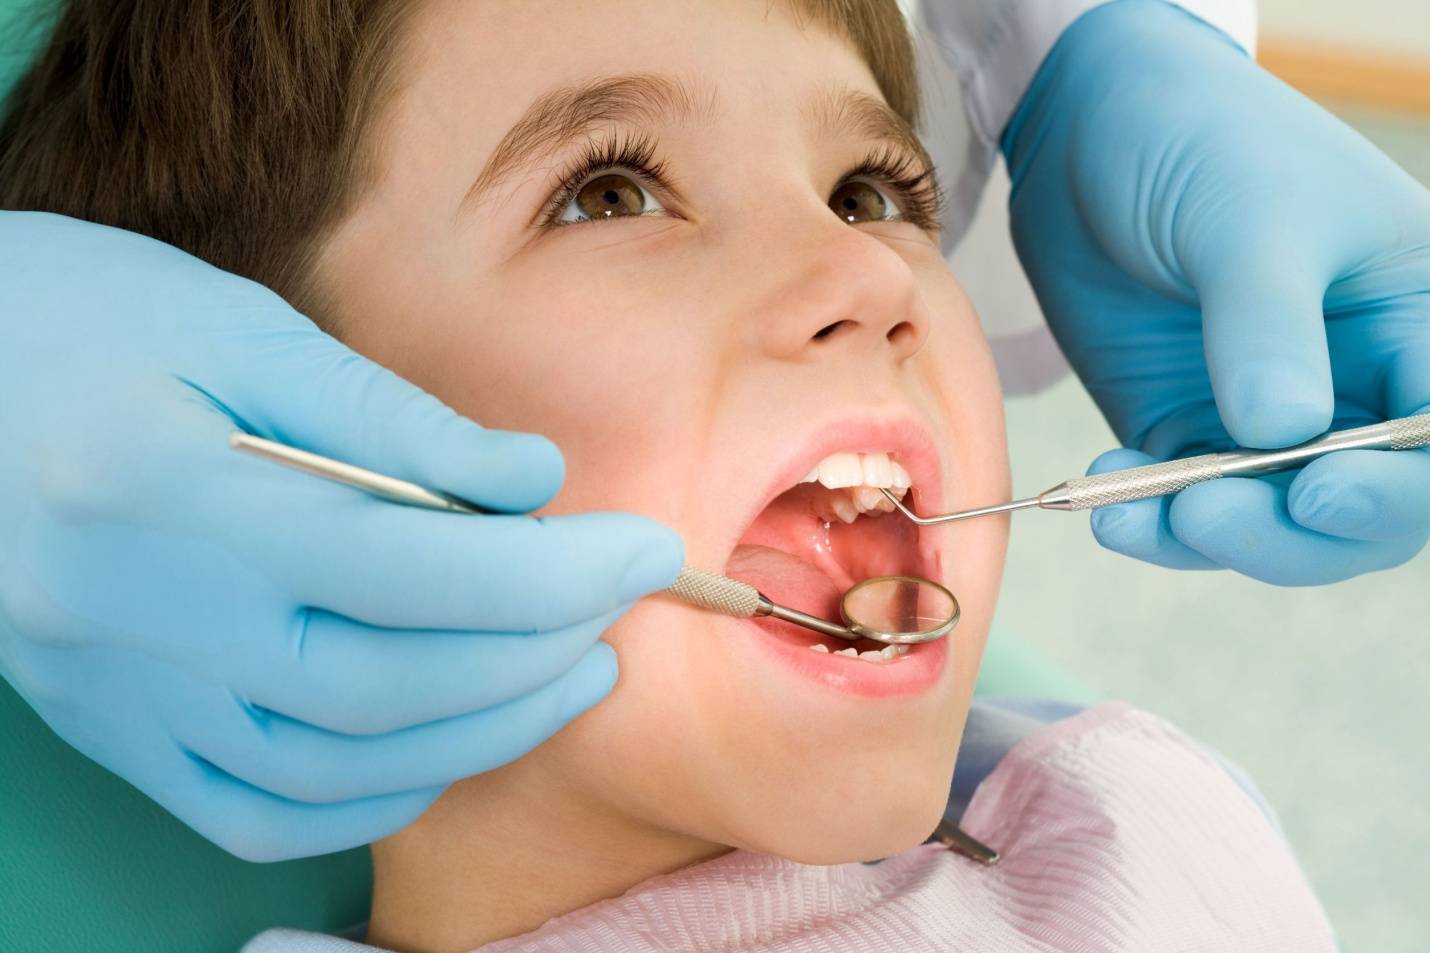 دندانپزشکی کودکان دندانپزشکی بدون درد دندانپزشکی درمان های دندانپزشکی افتادن دندان شیری دندانپزشکی کودکان دندانپزشکی بدون درد دندانپزشکی درمان های دندانپزشکی افتادن دندان شیری 